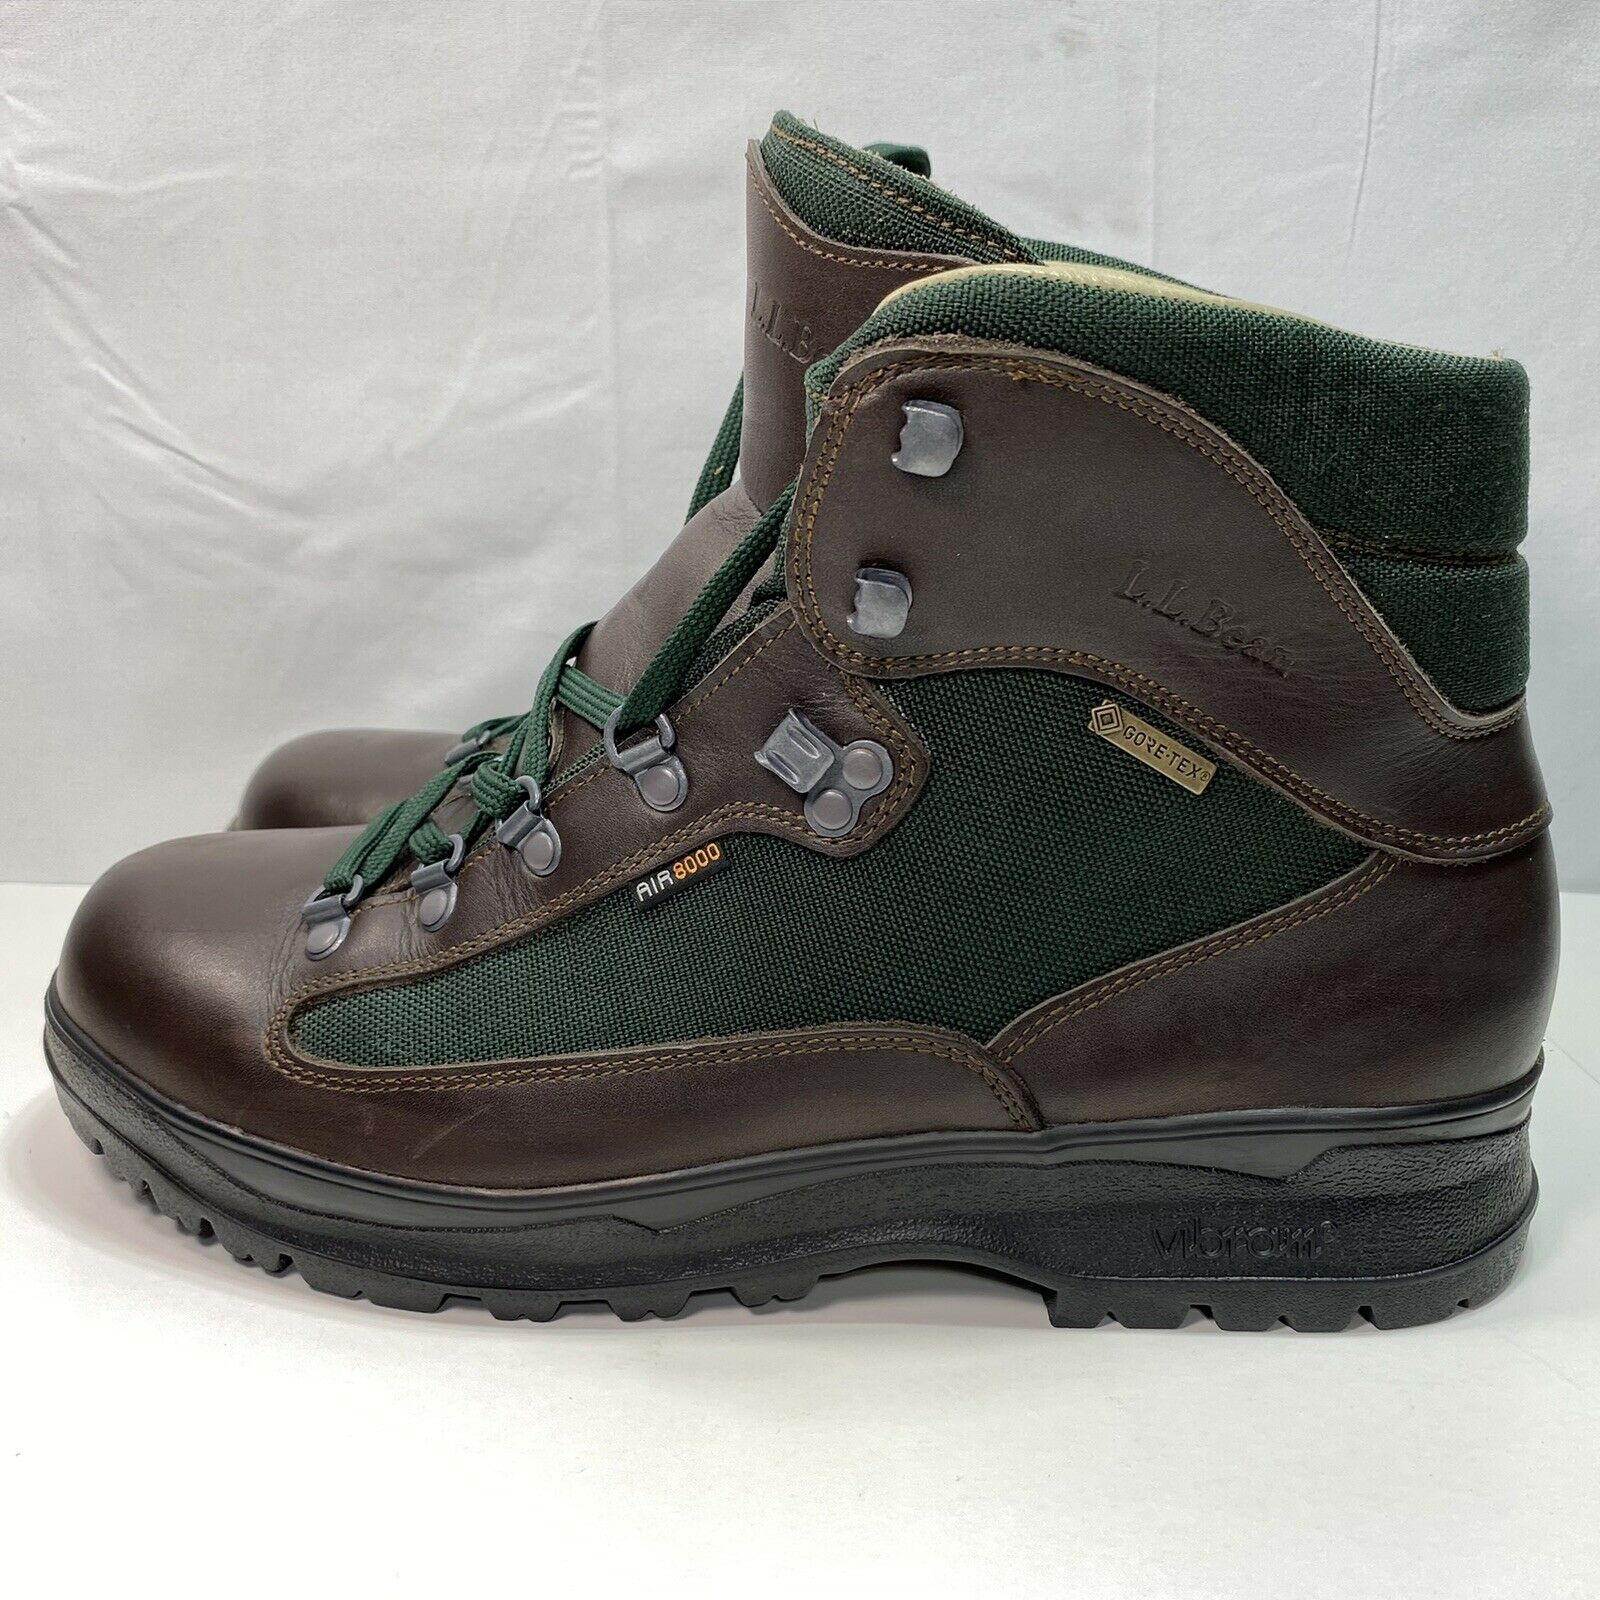 Men's LL BEAN Cresta Air 8000 GORE TEX Mid Hiking Boots Vibram Size 9W